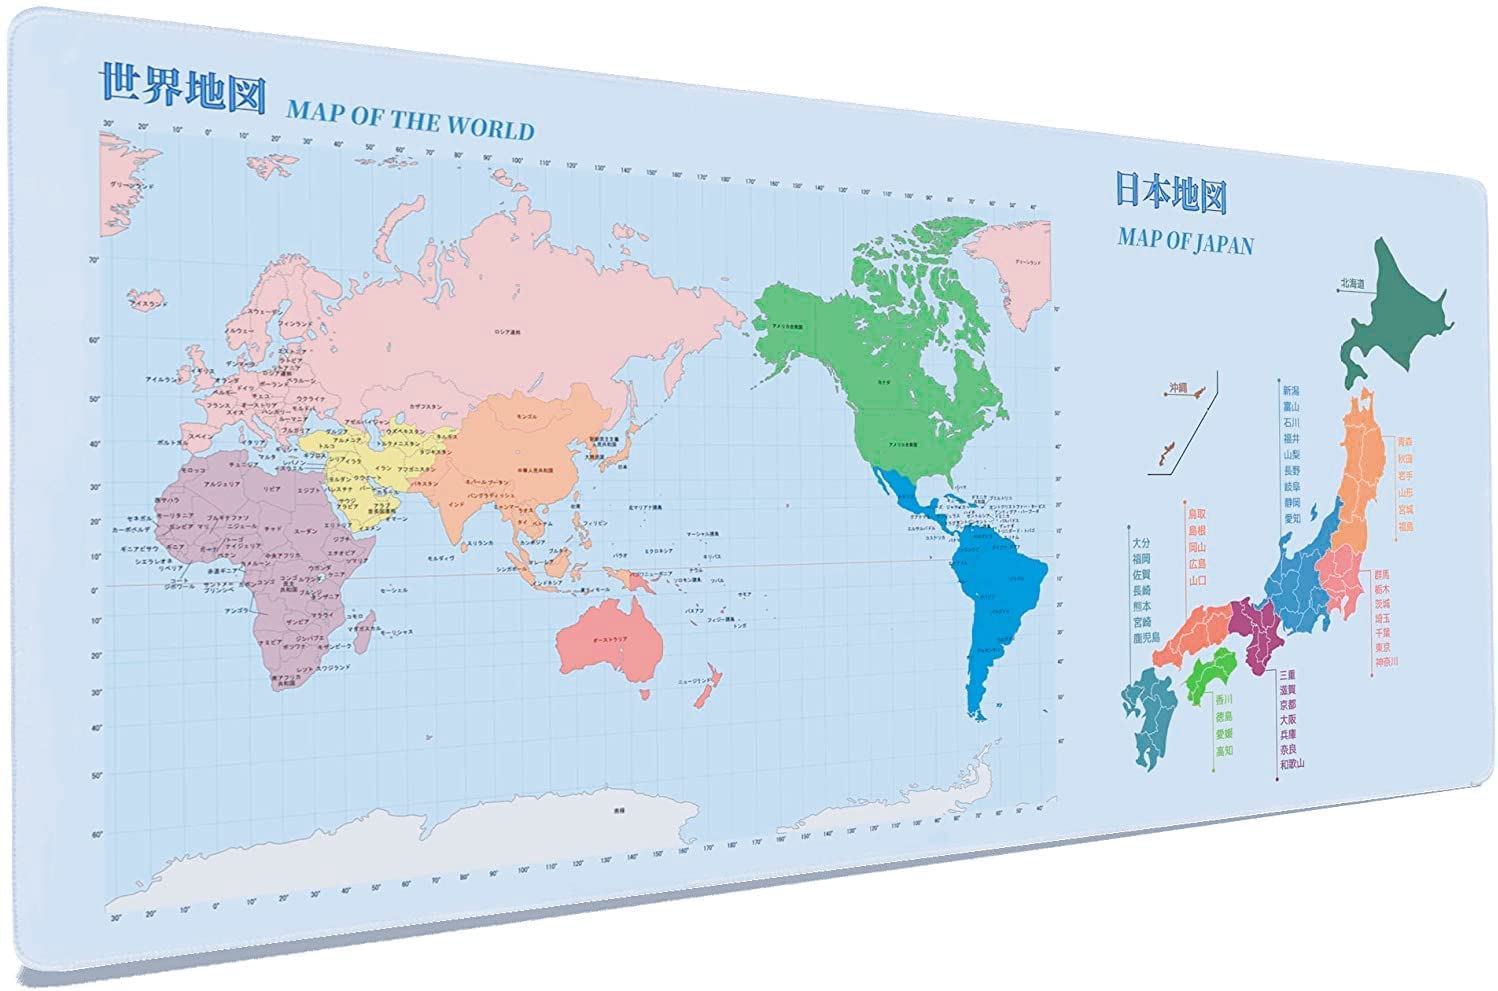 マウスパッド 地図 世界地図 日本地図 大型 900mm x 400mm ゲーミング デスクマット 大型キーボードパッド 滑り止め 防水耐久 Blue XXL